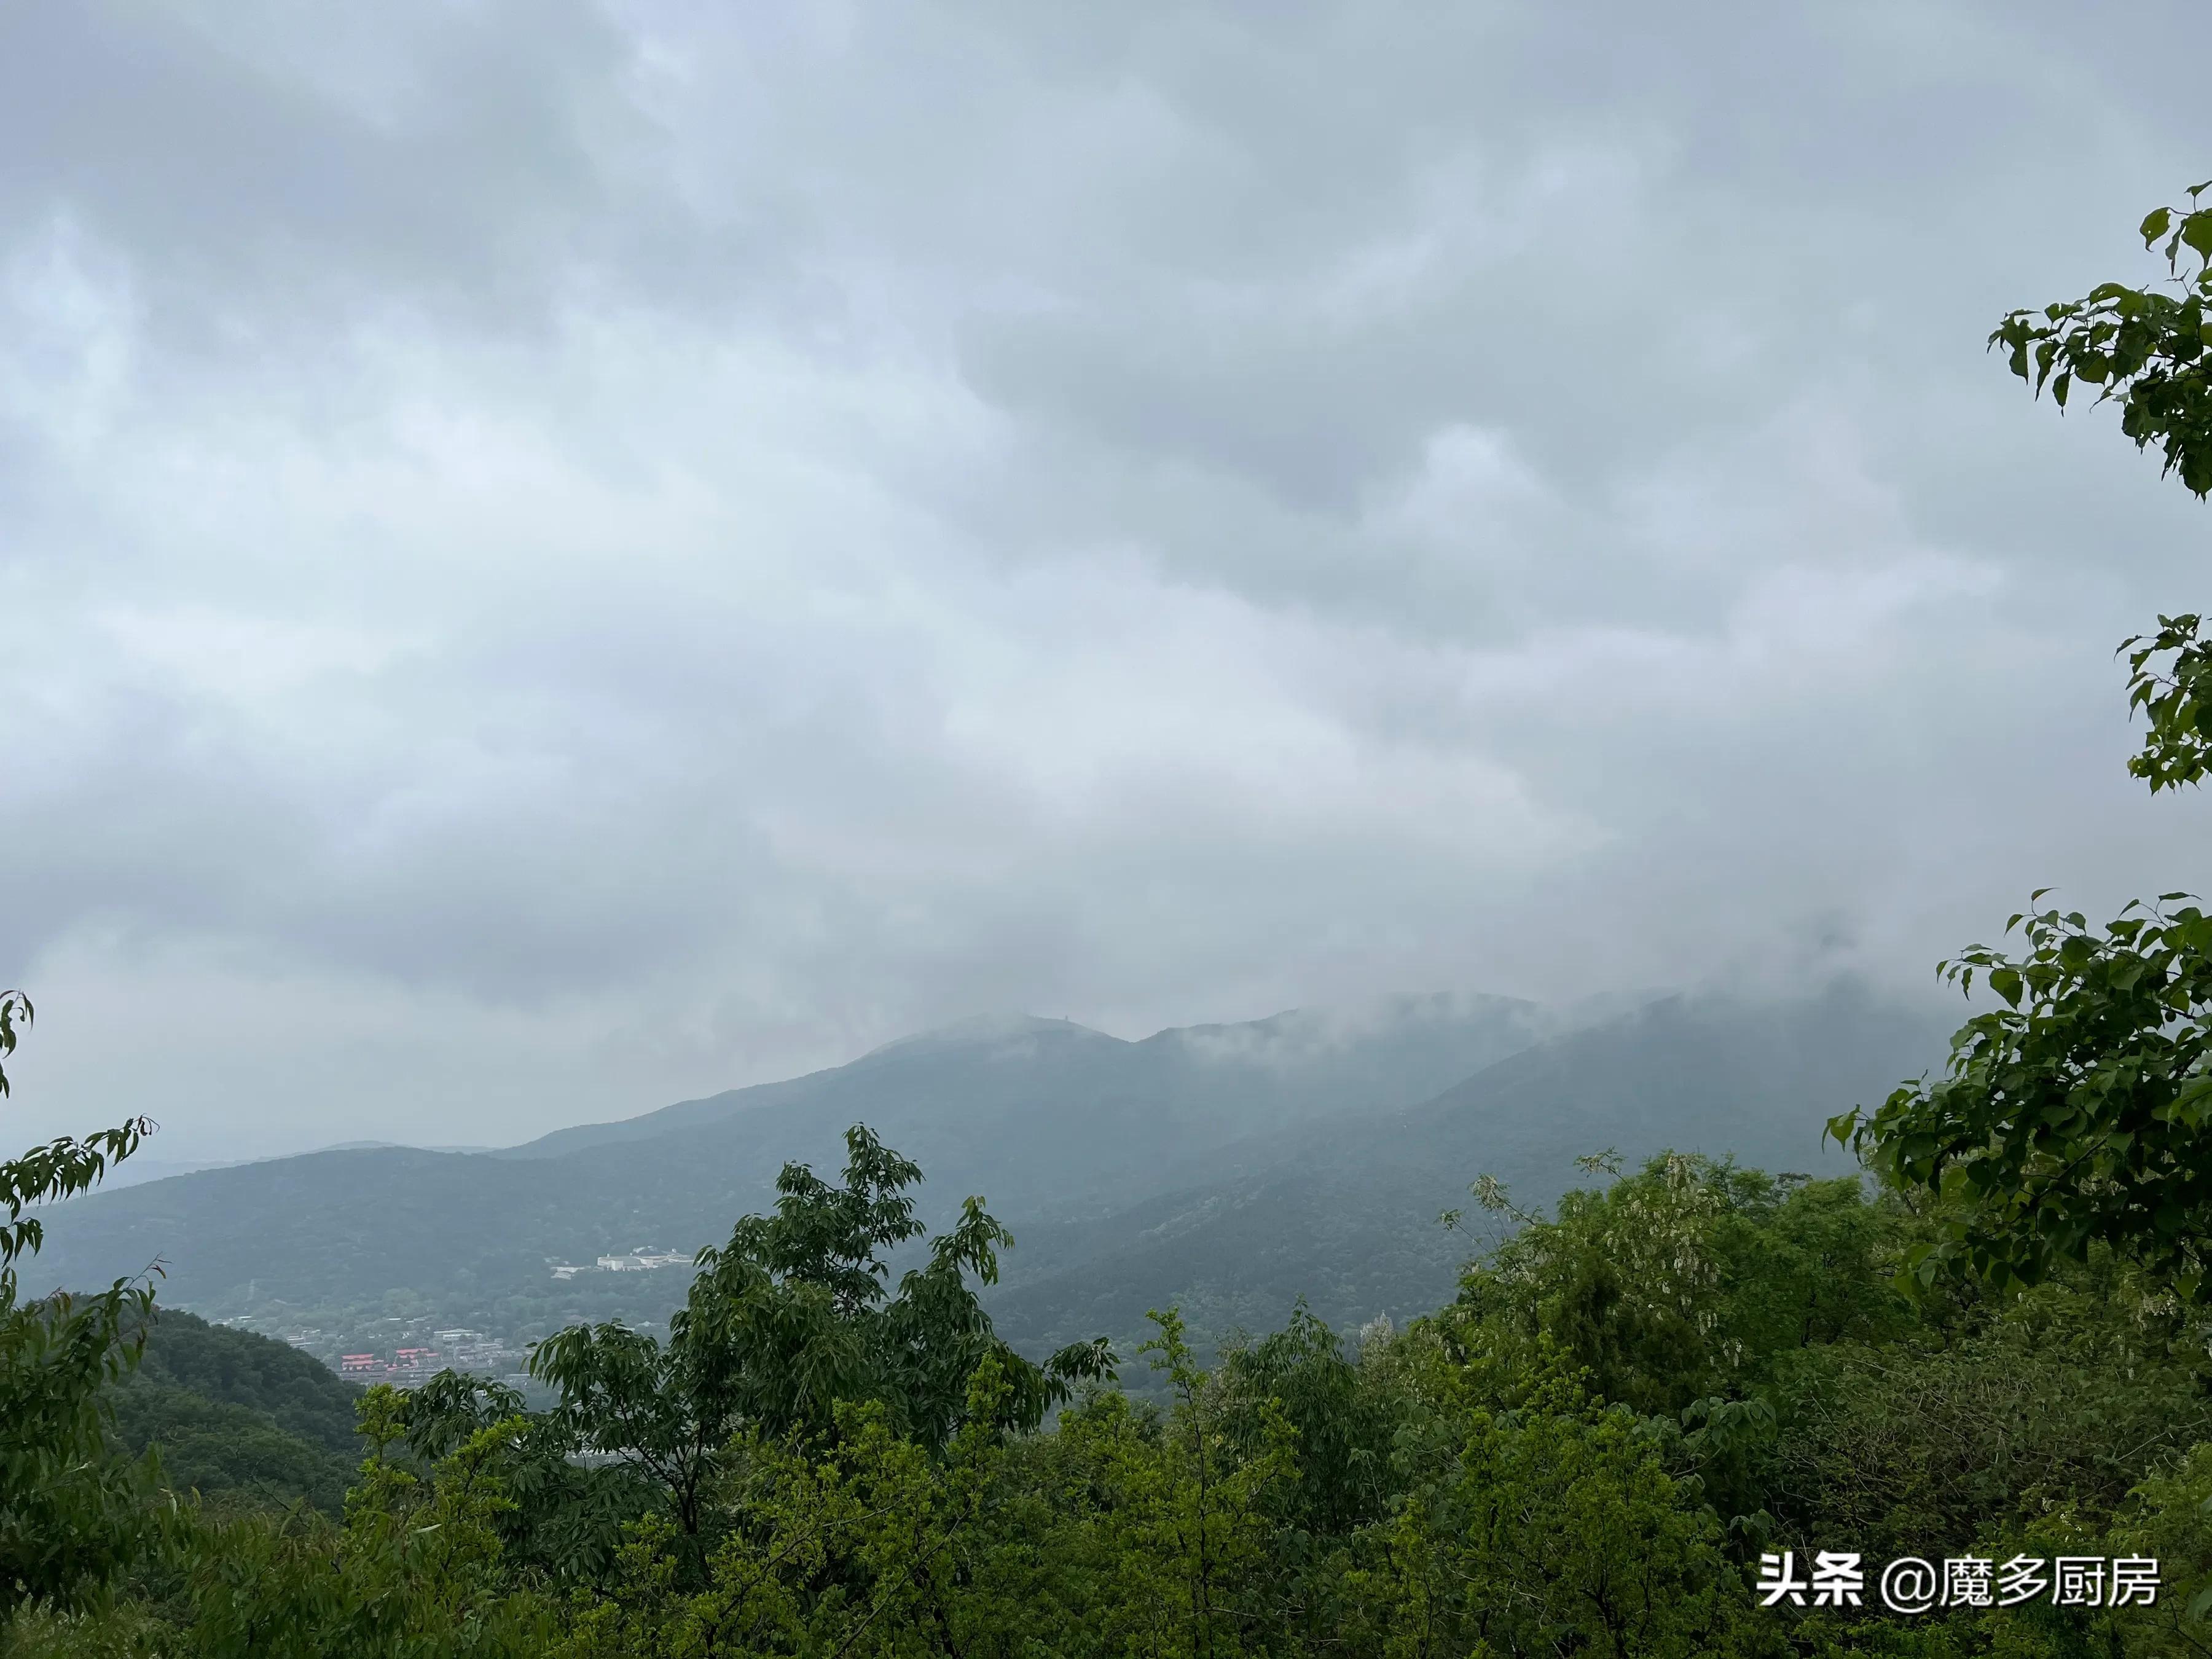 北京香山植物园户外记录，带孩子们雨中山野徒步，感受自然乐趣